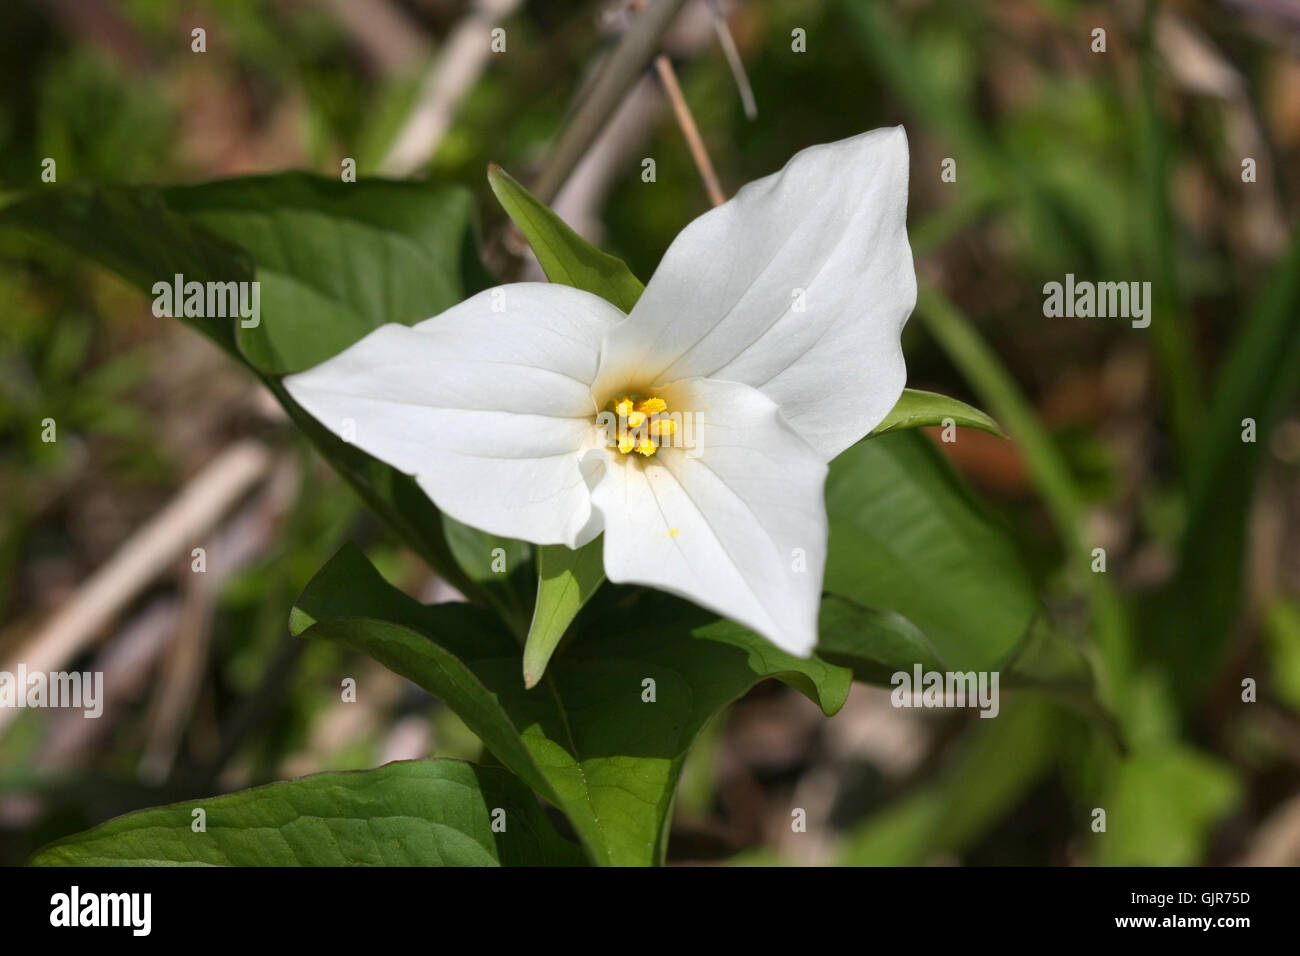 Trillium flower Stock Photo